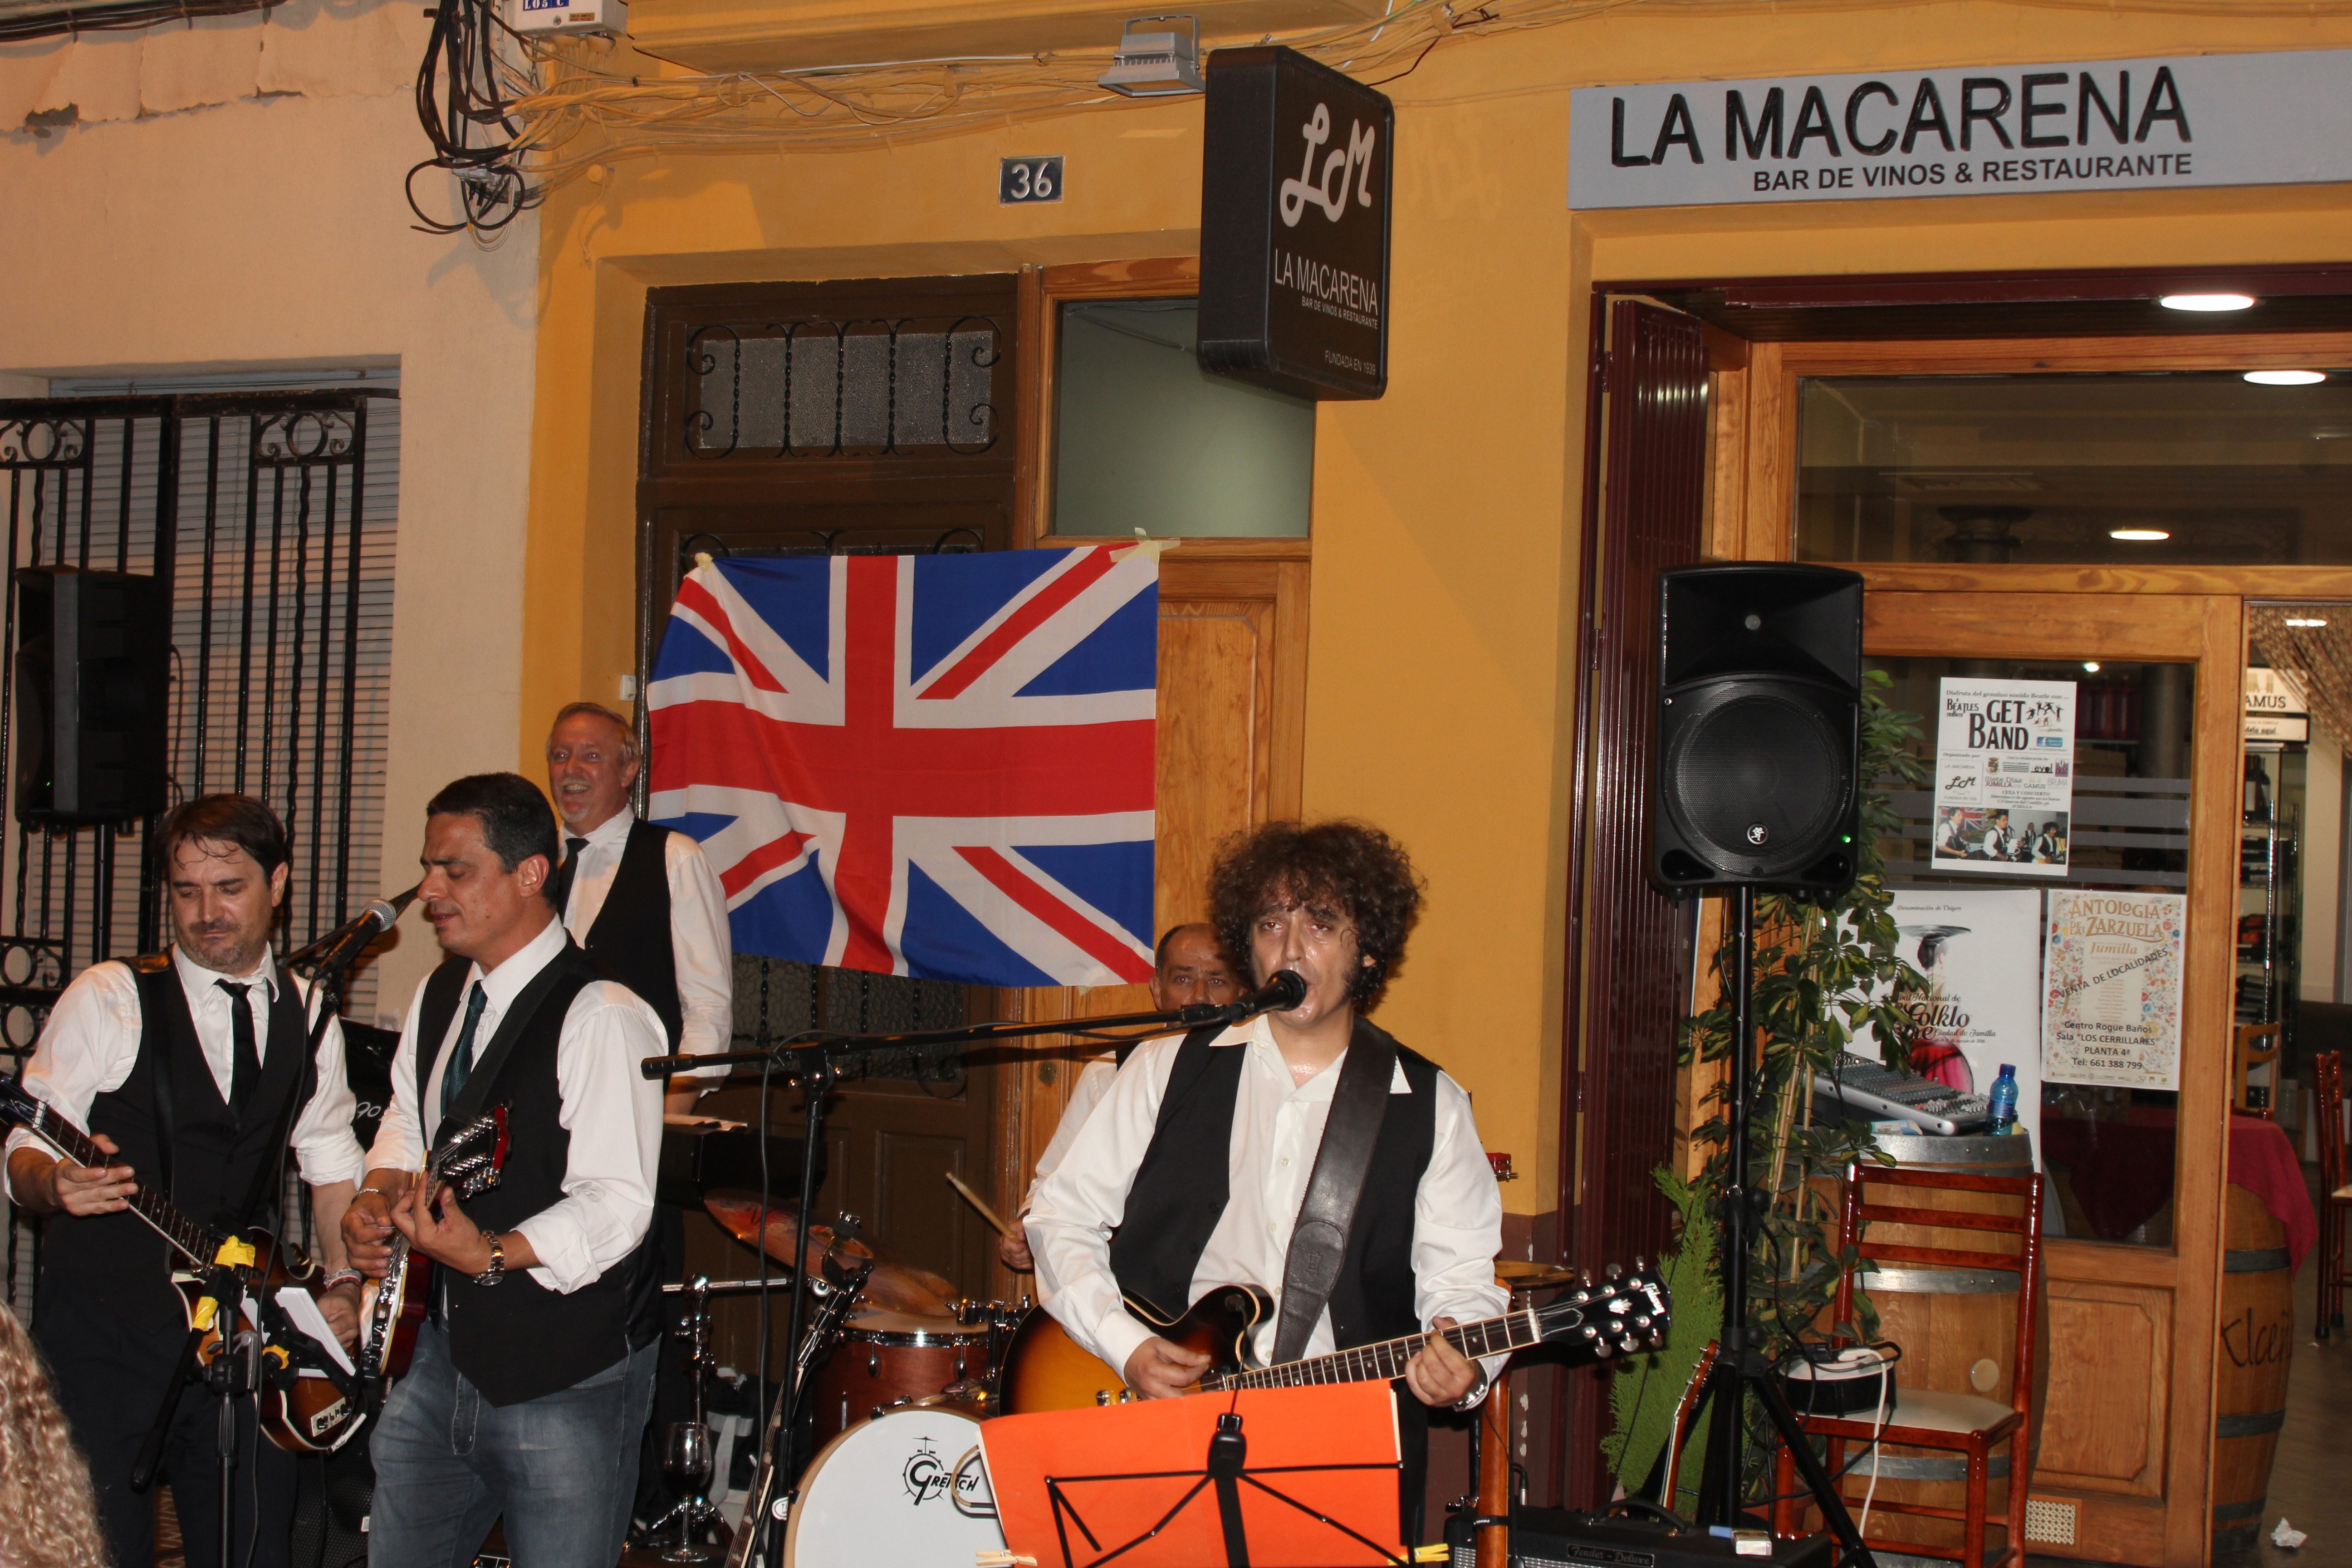 Get Band amenizó la noche de  La Macarena a ritmo de Beatles